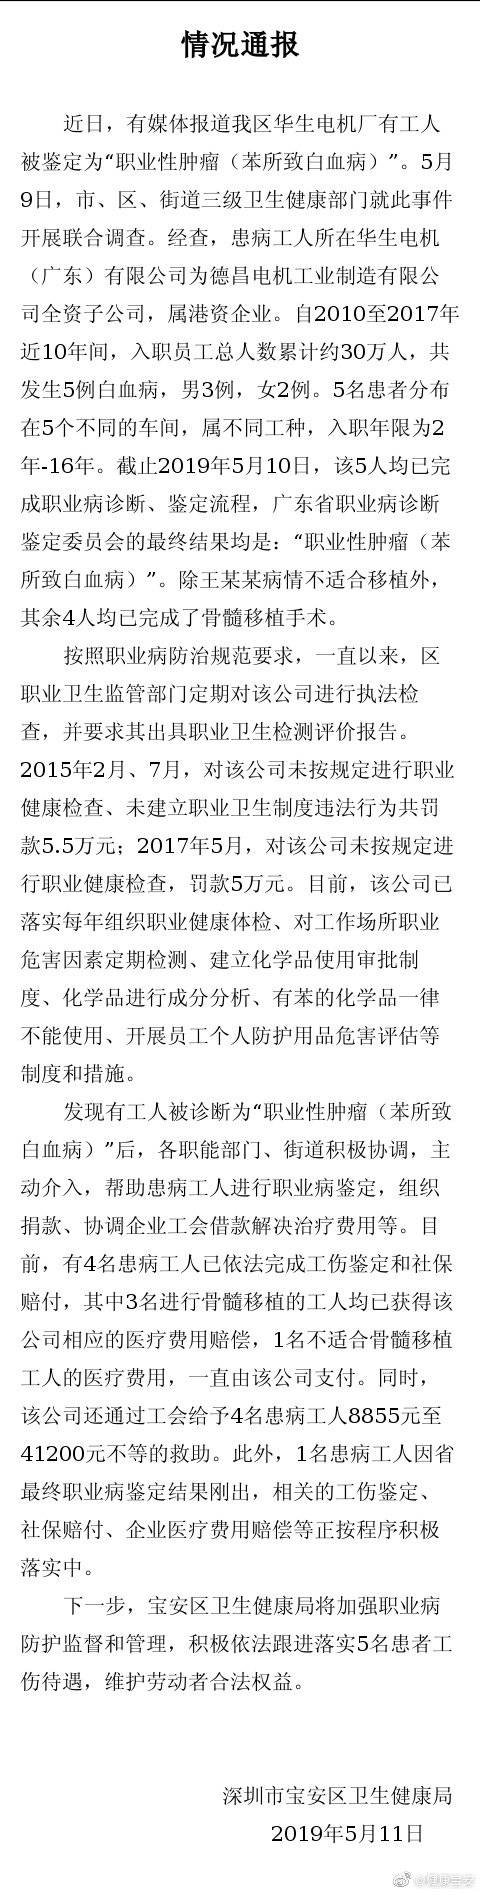 深圳通报“电机厂工人患白血病”：企业曾被罚10.5万